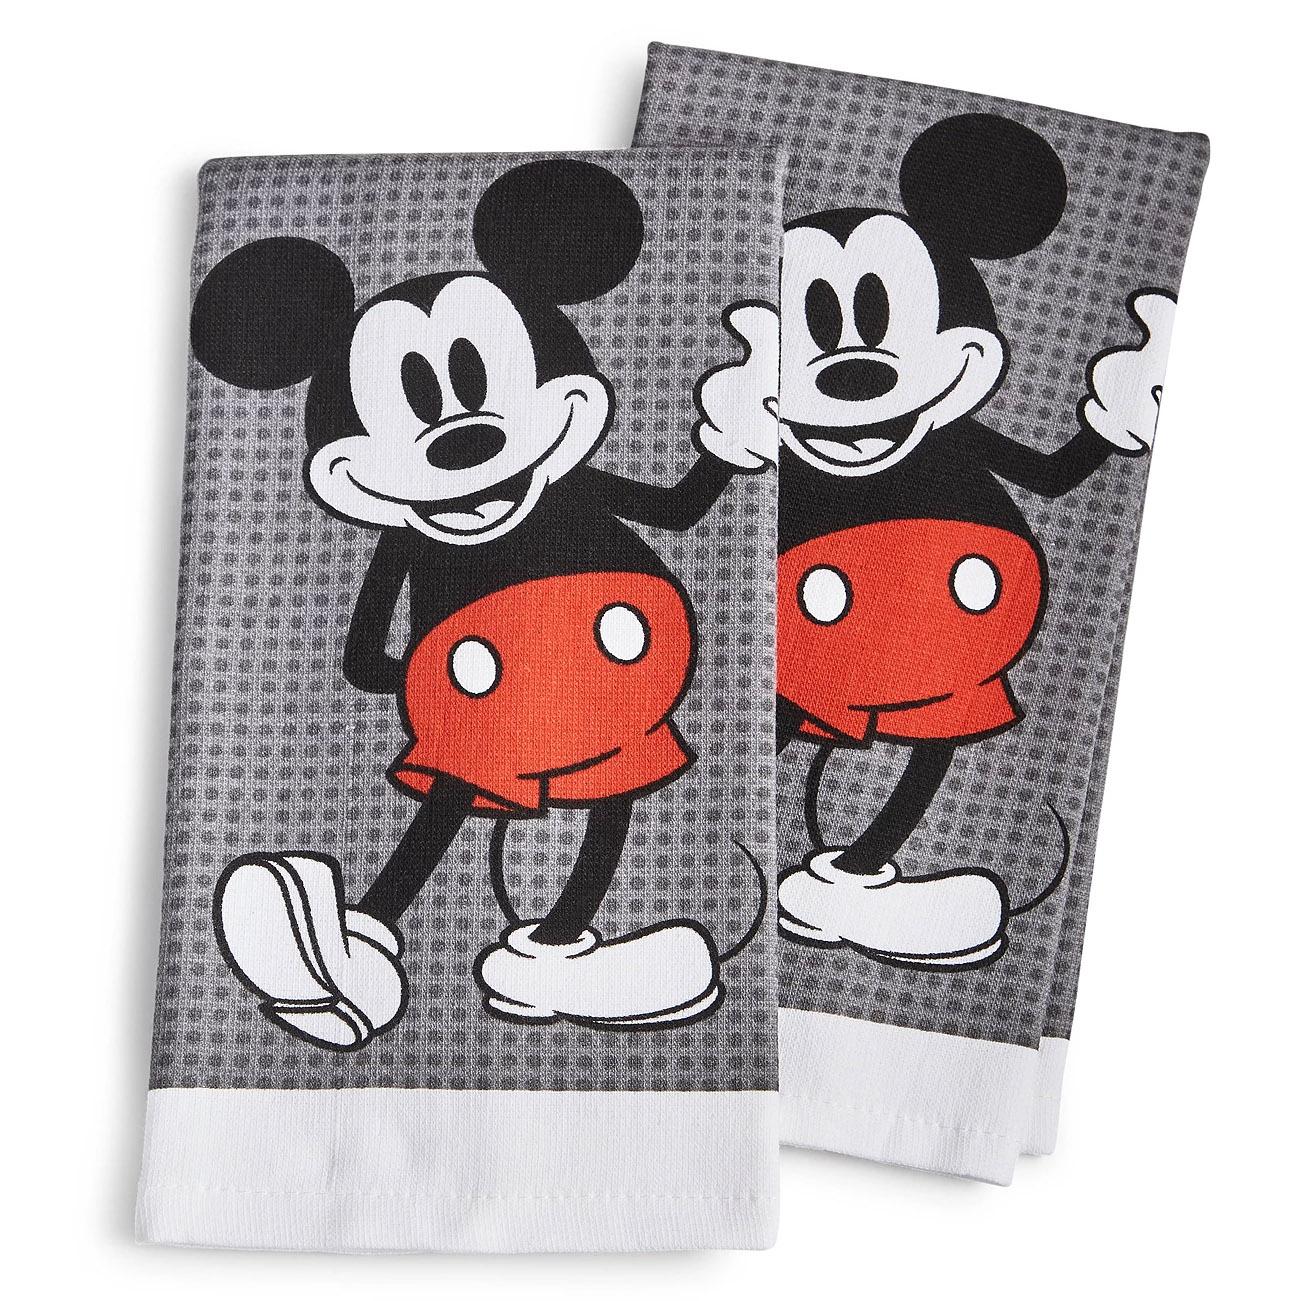 Disney Kitchen Towels 2 Set for $7.49